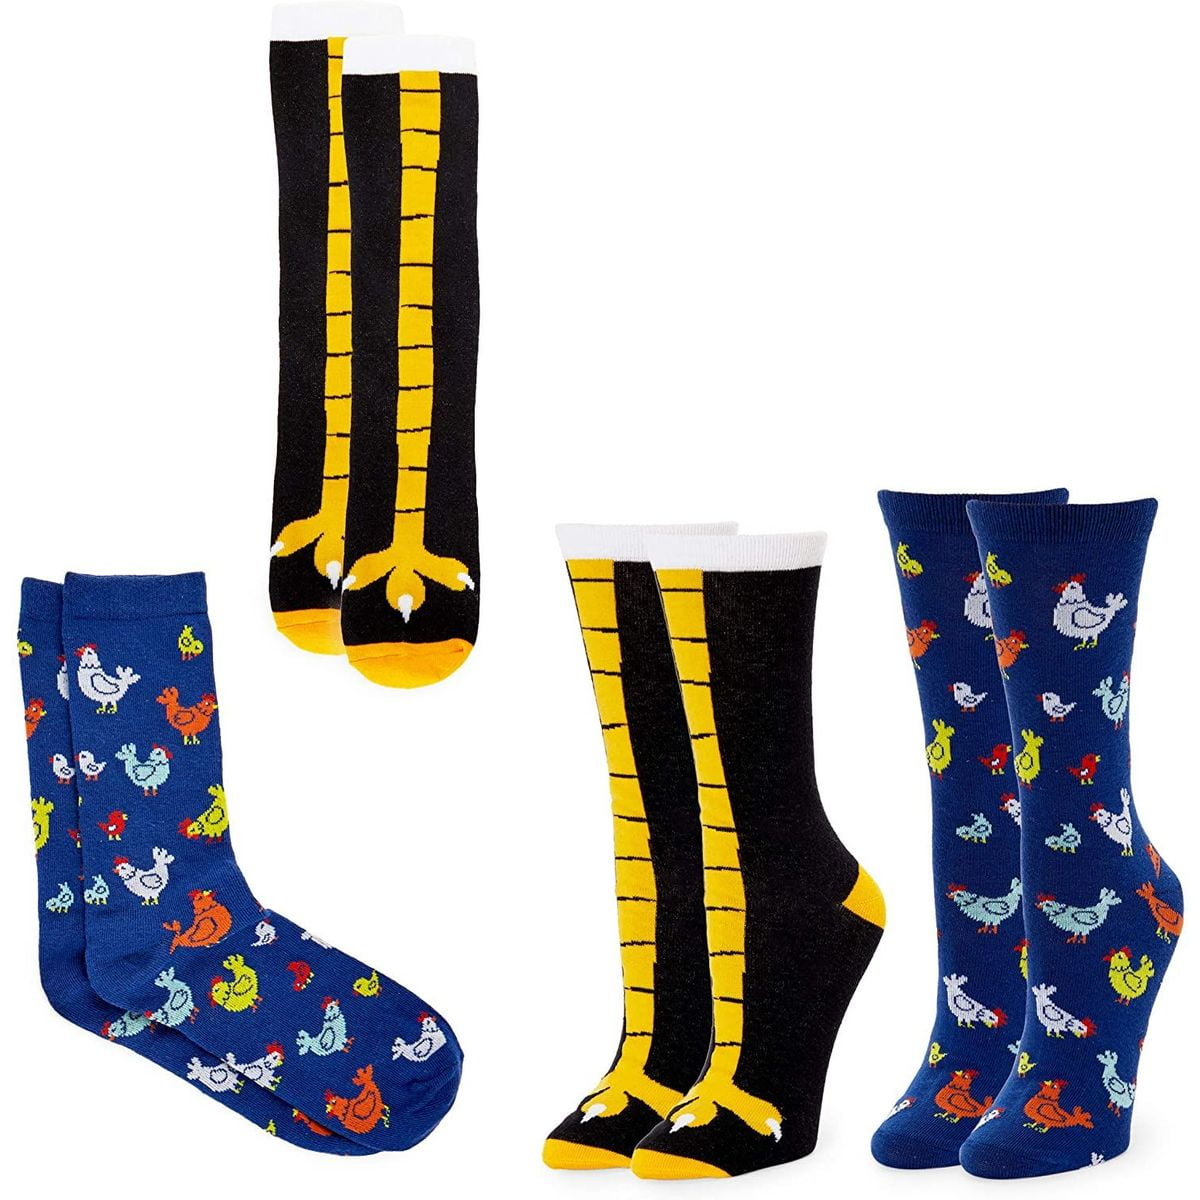 Kangaroo Socks,2 PAIR PACK,Novelty socks,Funky socks,Fancy socks 